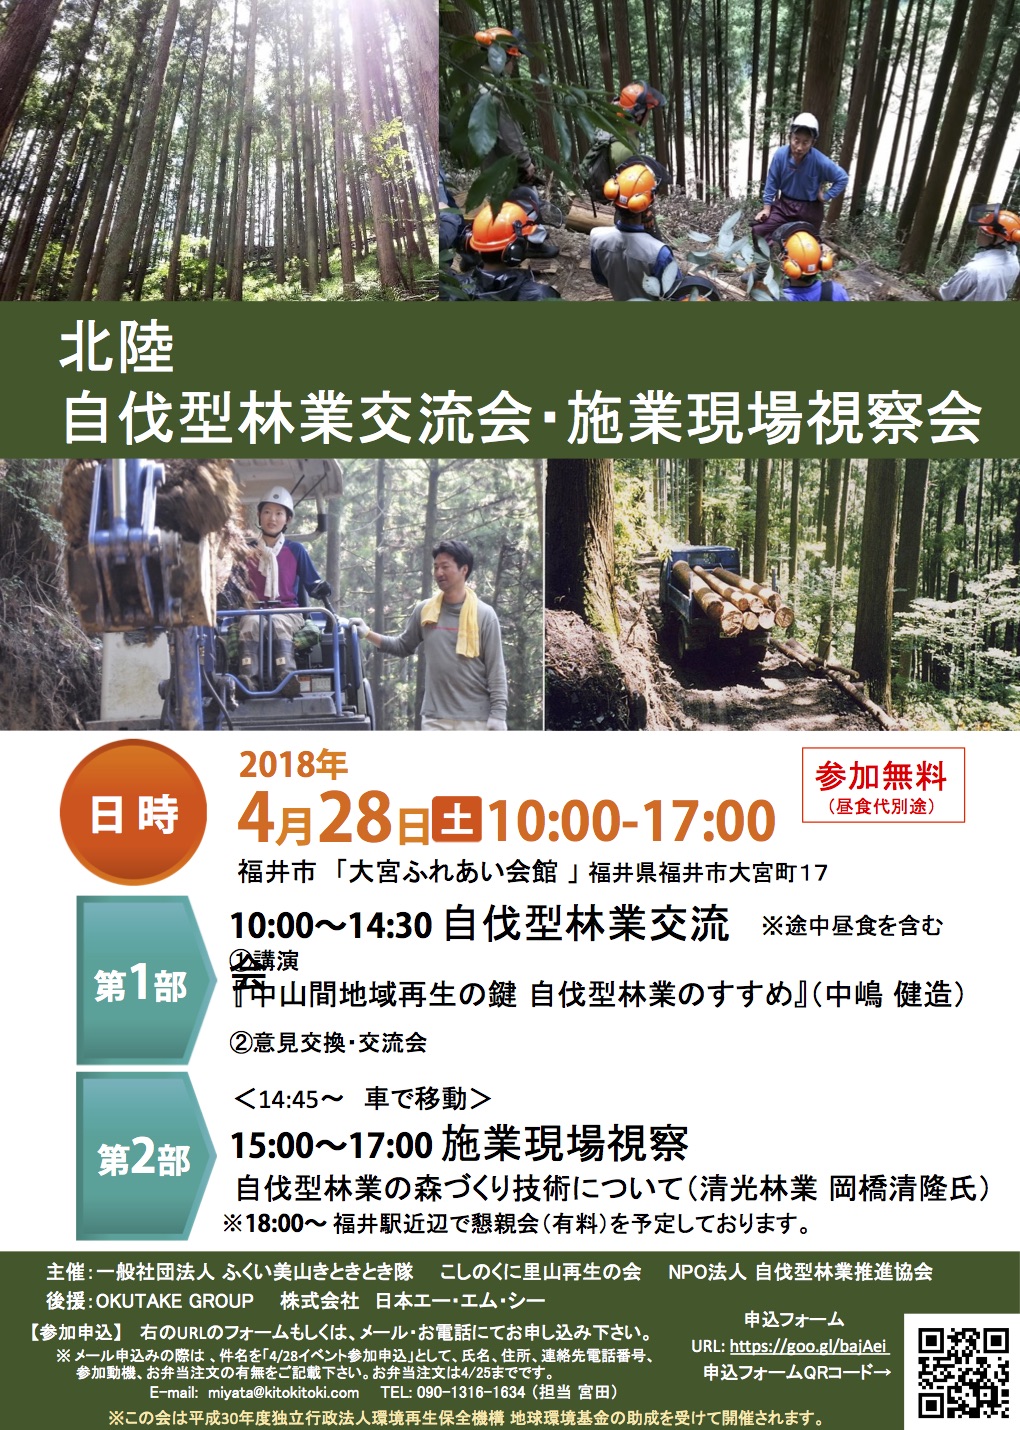 福井にて4月28日「北陸 自伐型林業交流会・施業現場視察会 」が開催されます。